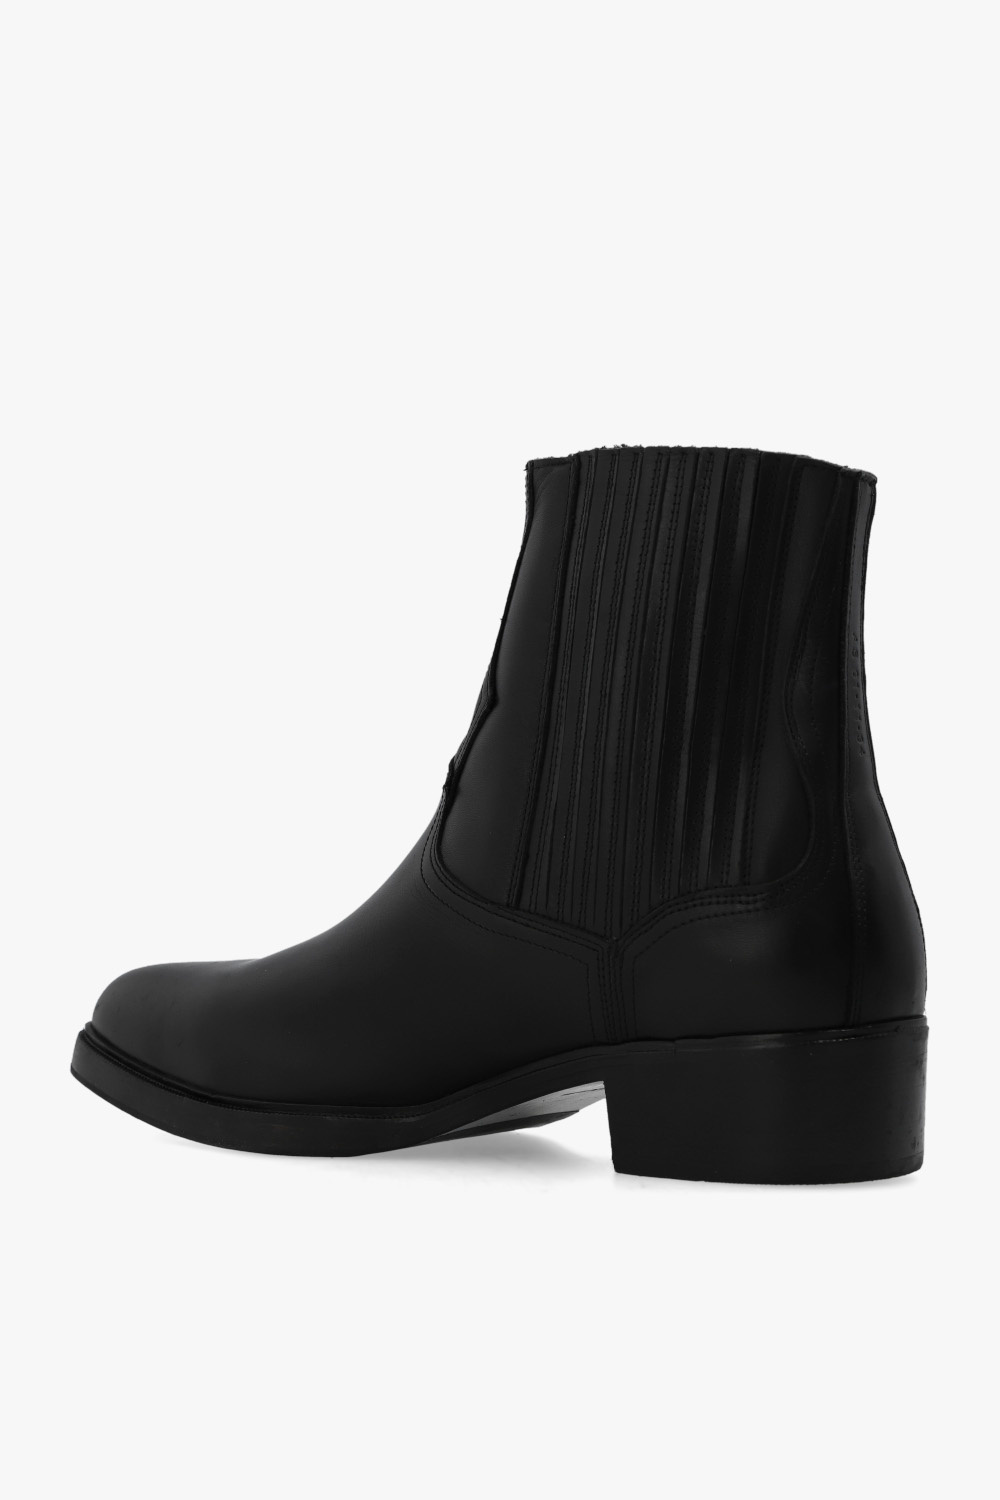 AllSaints 'Lasgo' leather ankle boots | Men's Shoes | Vitkac